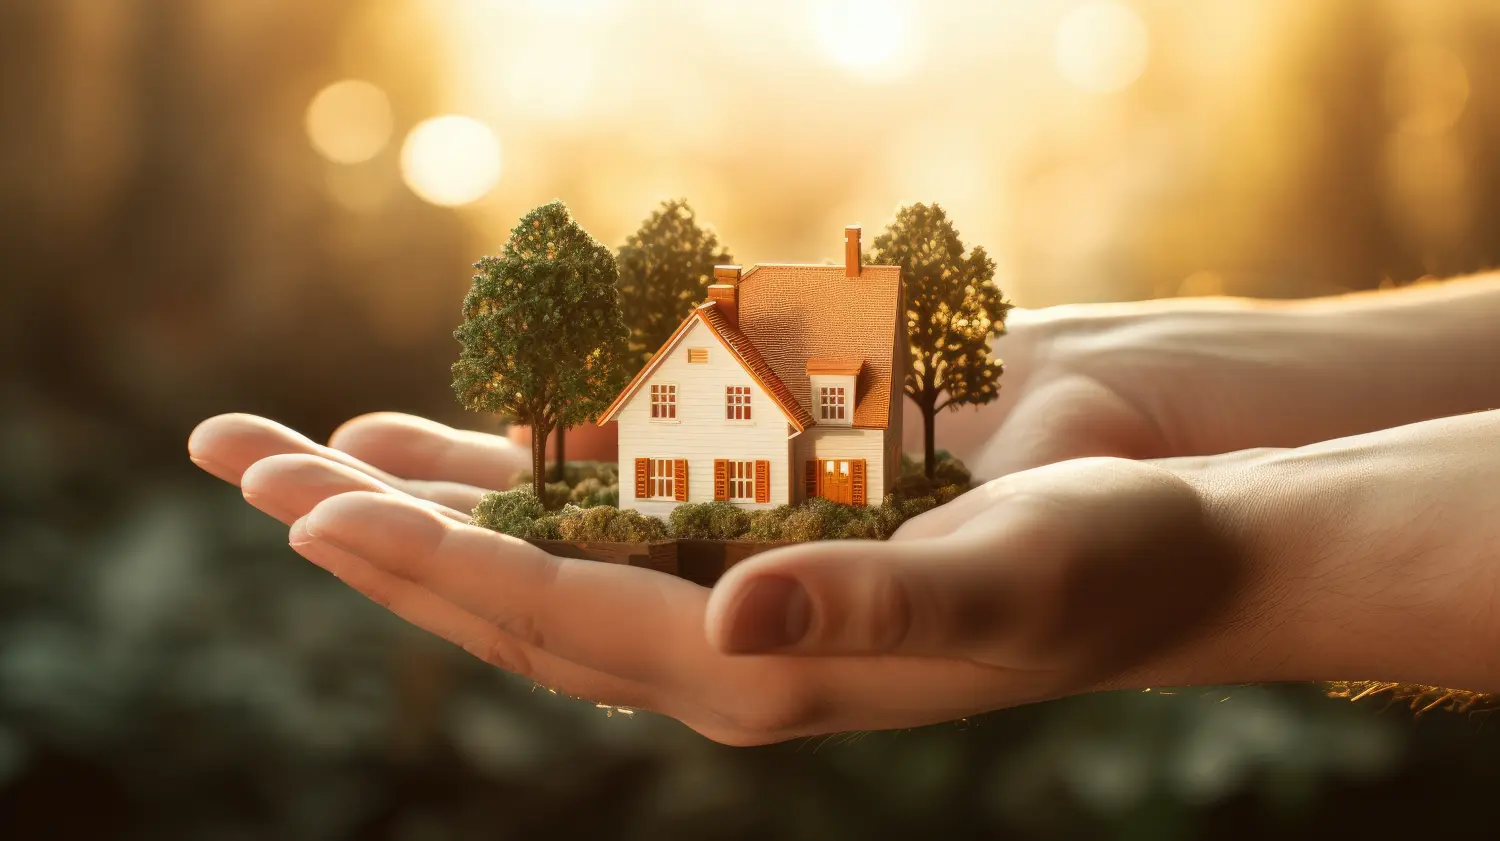 Kleines Haus in einer menschlichen Hand. Neues Haus, Geschäft, Investition und Immobilienkonzept